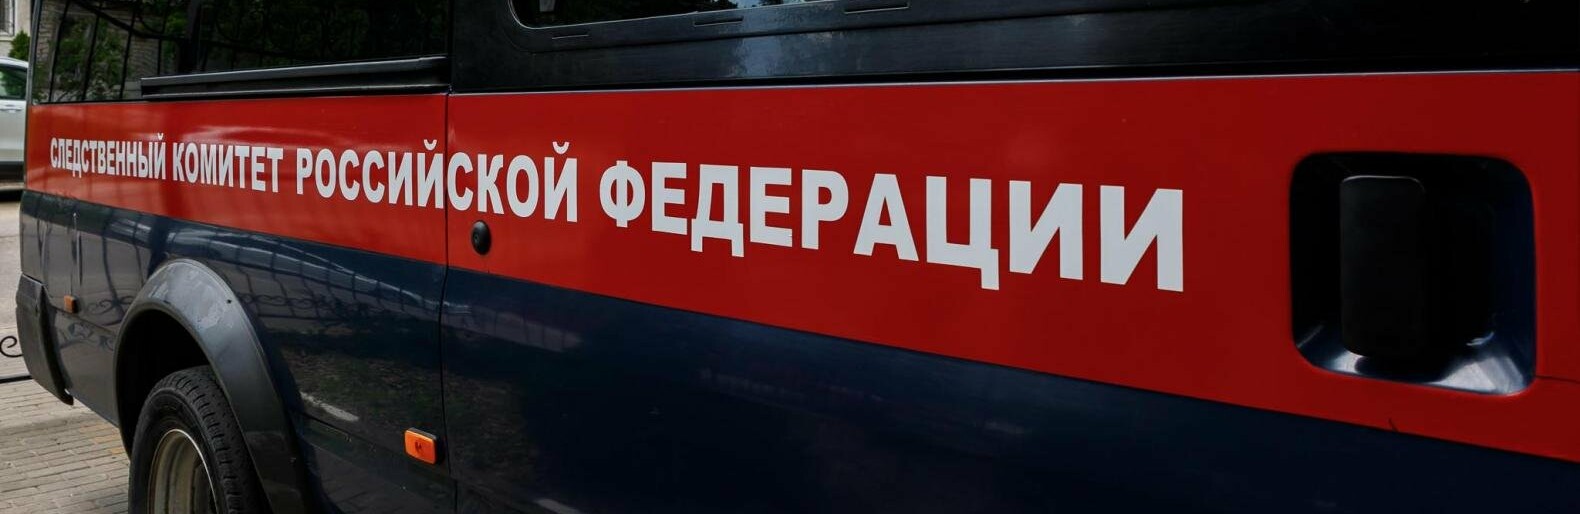 Рабочие погибли в канализации в Белгородской области